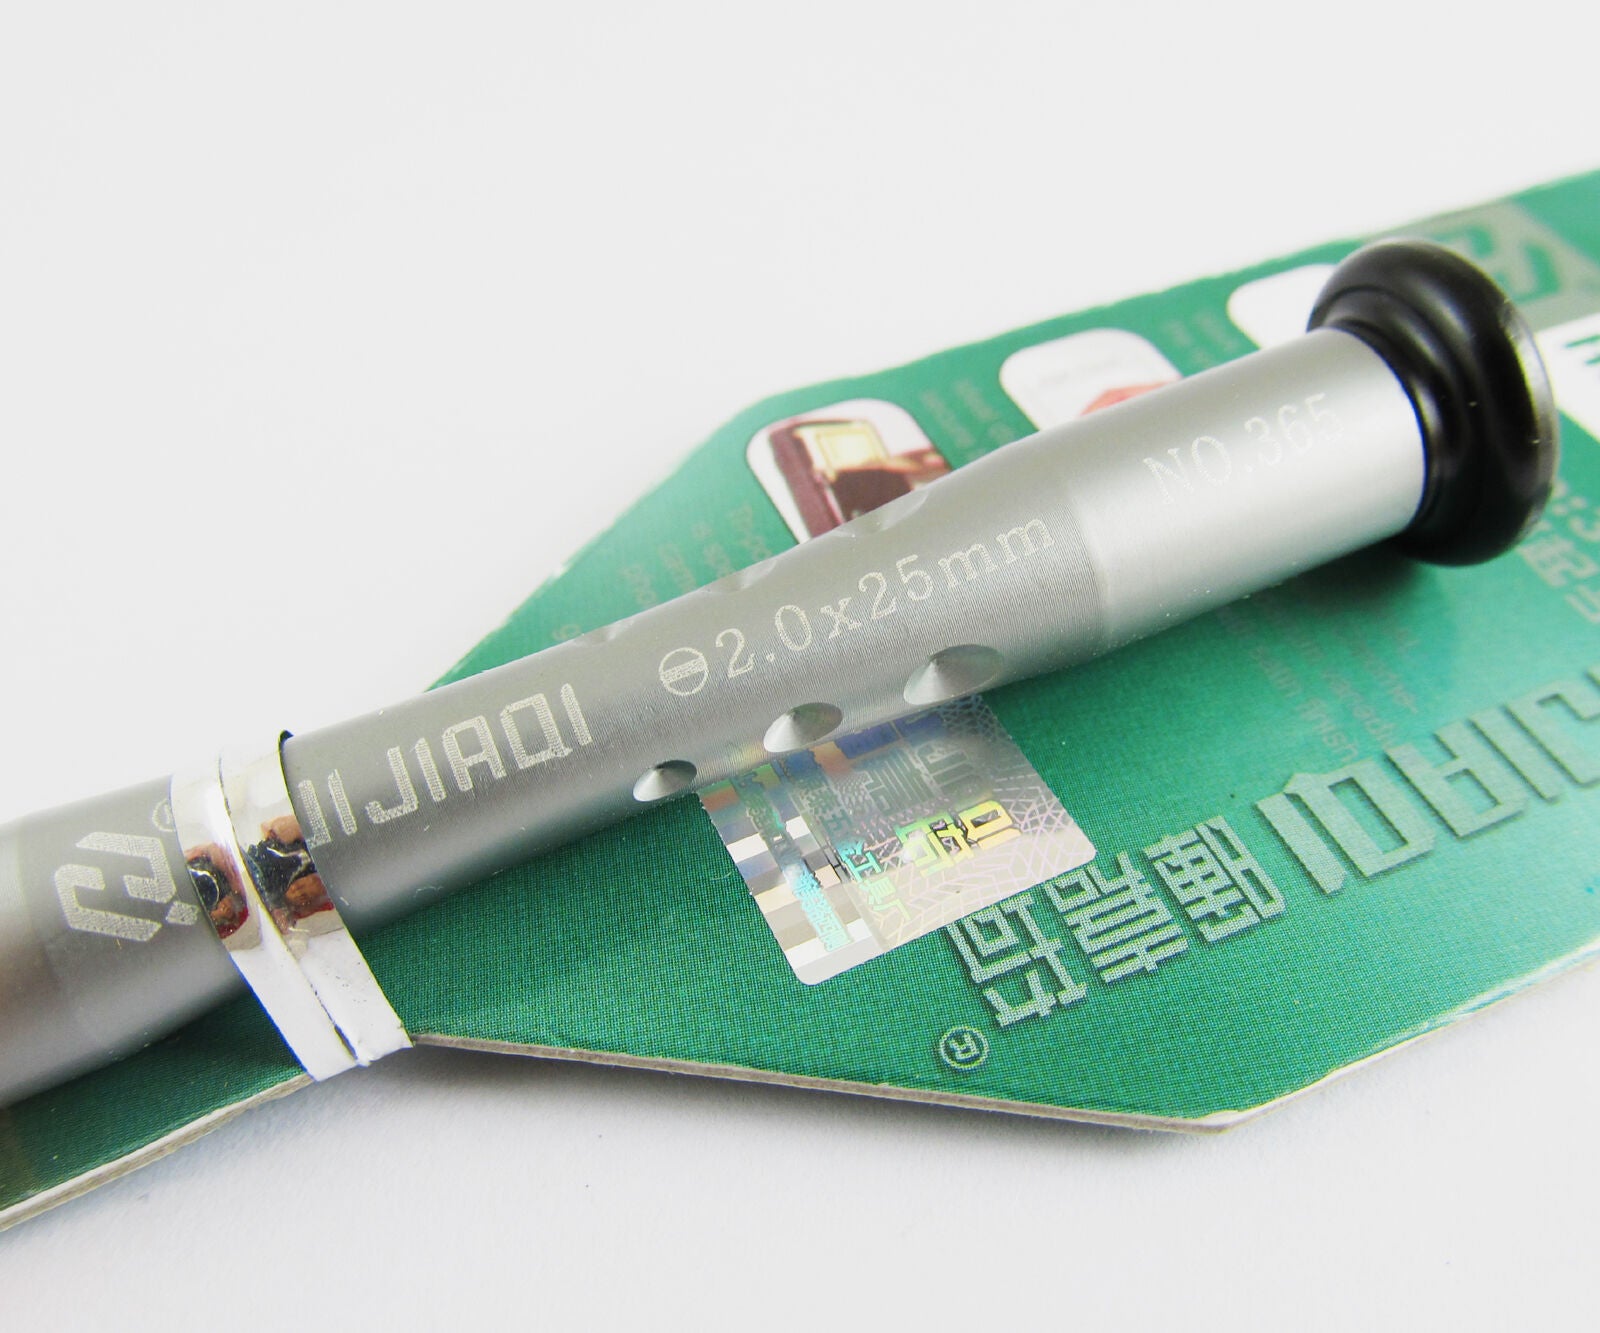 10pcs 2.0x25mm HUIJIAQI Zinc Alloy CR-V Screwdriver slotted screwdriver Tools